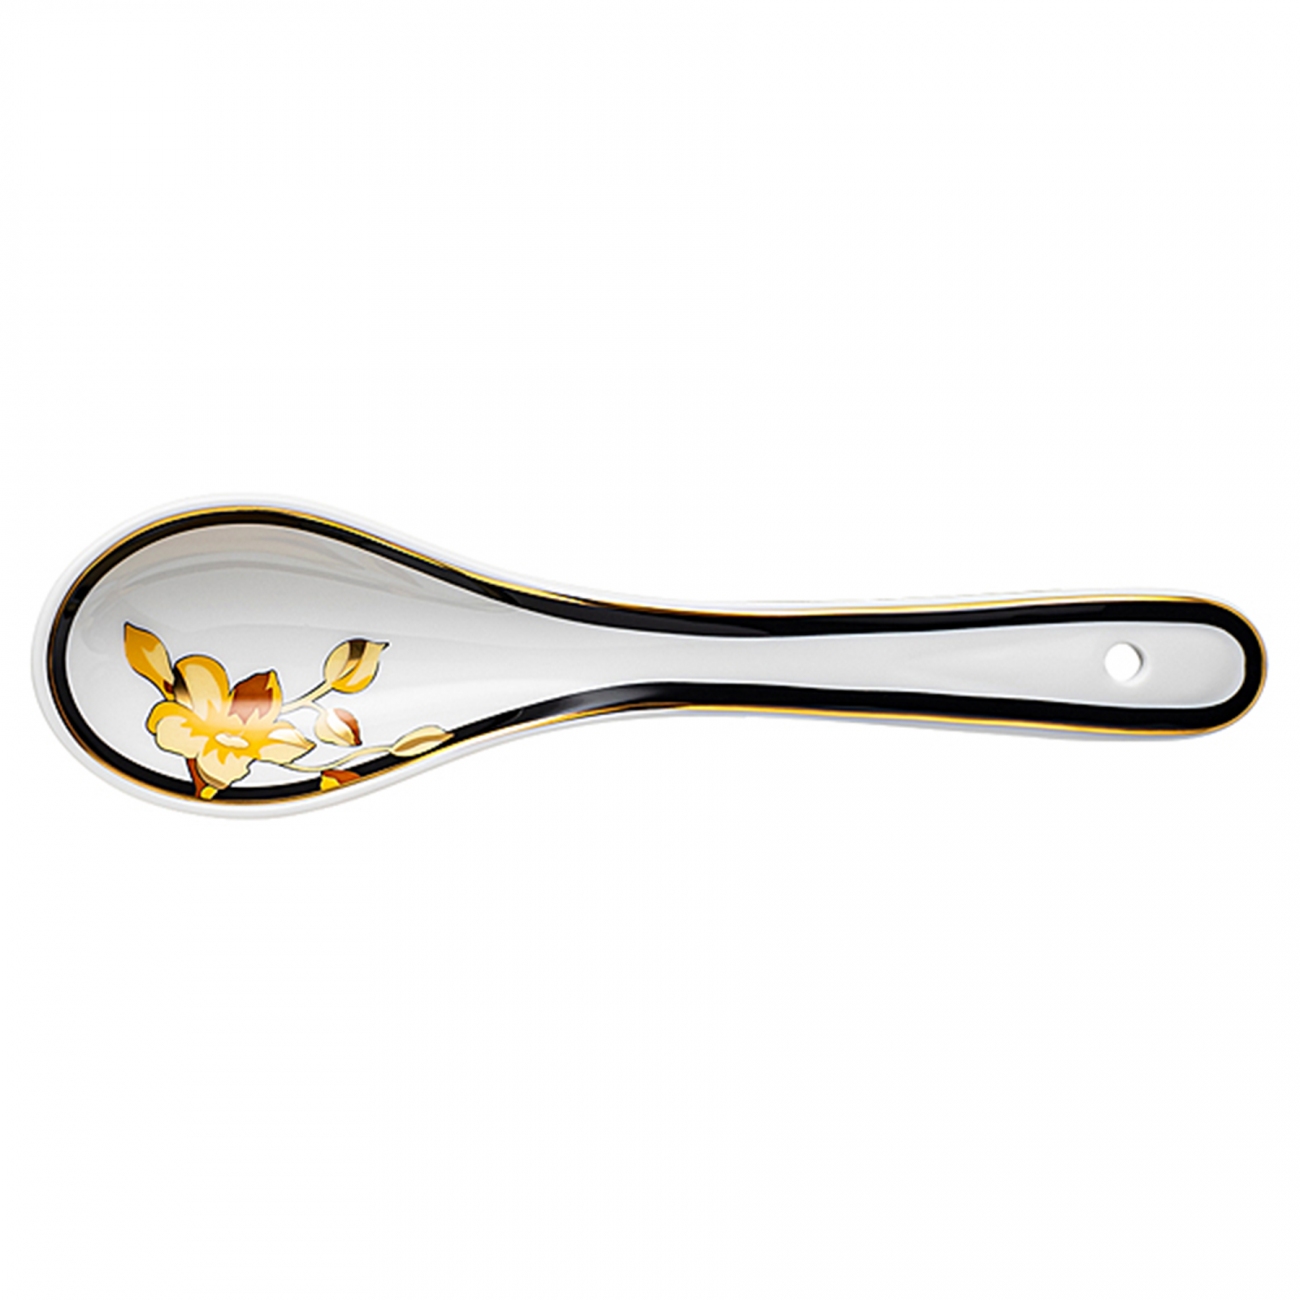 Rosenthal Versace Asia Vanity Porcelain spoon